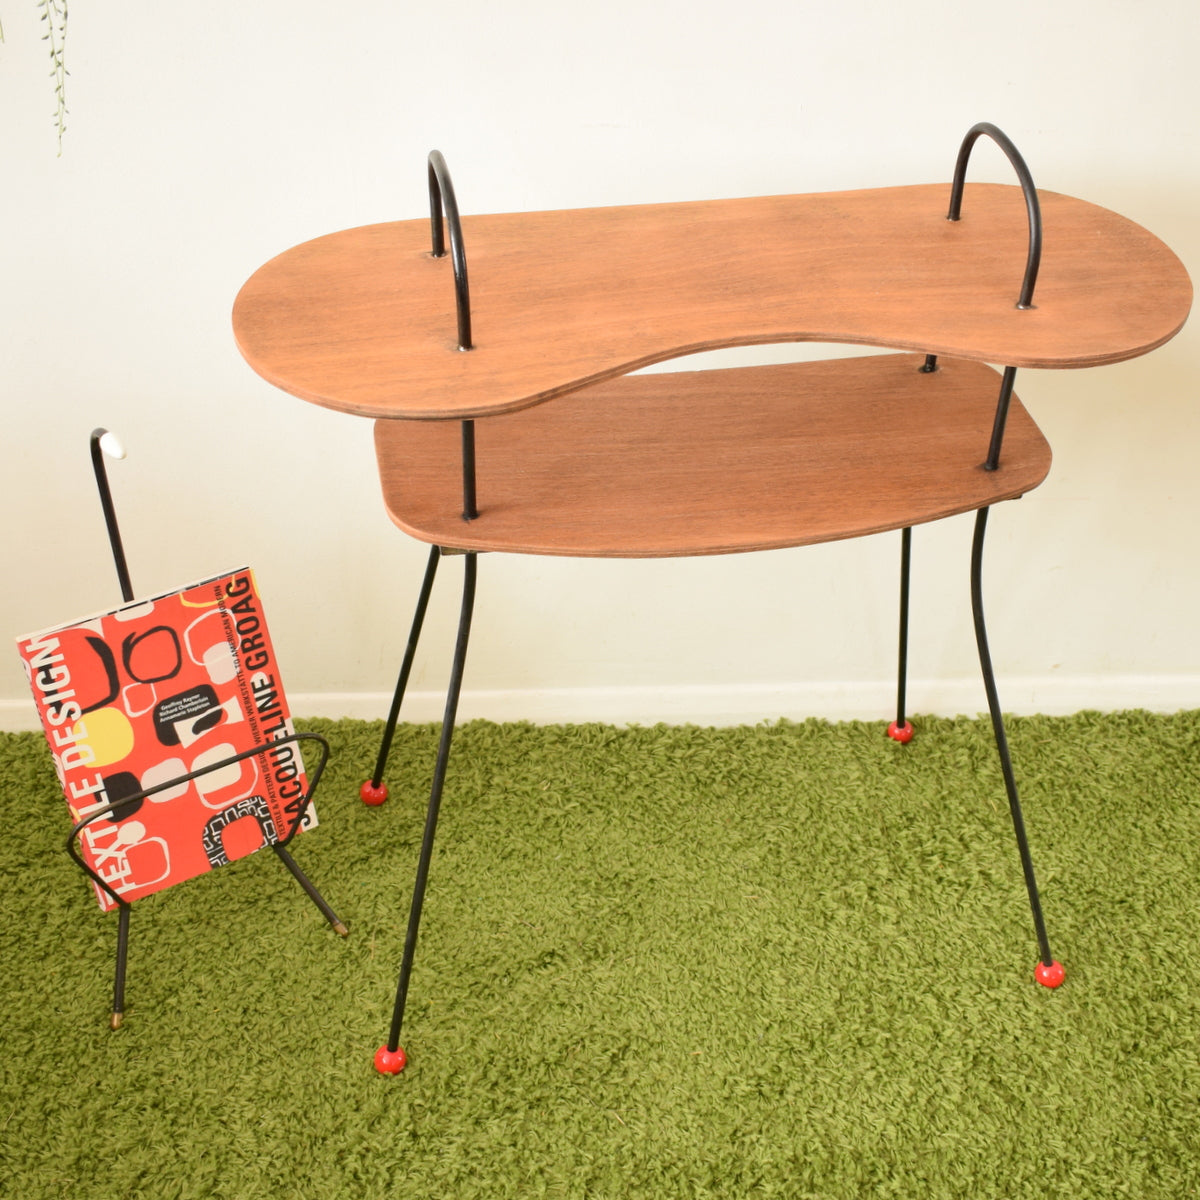 Vintage 1950s Atomic Hall Table - Teak Plywood / Metal - Red Ball Feet